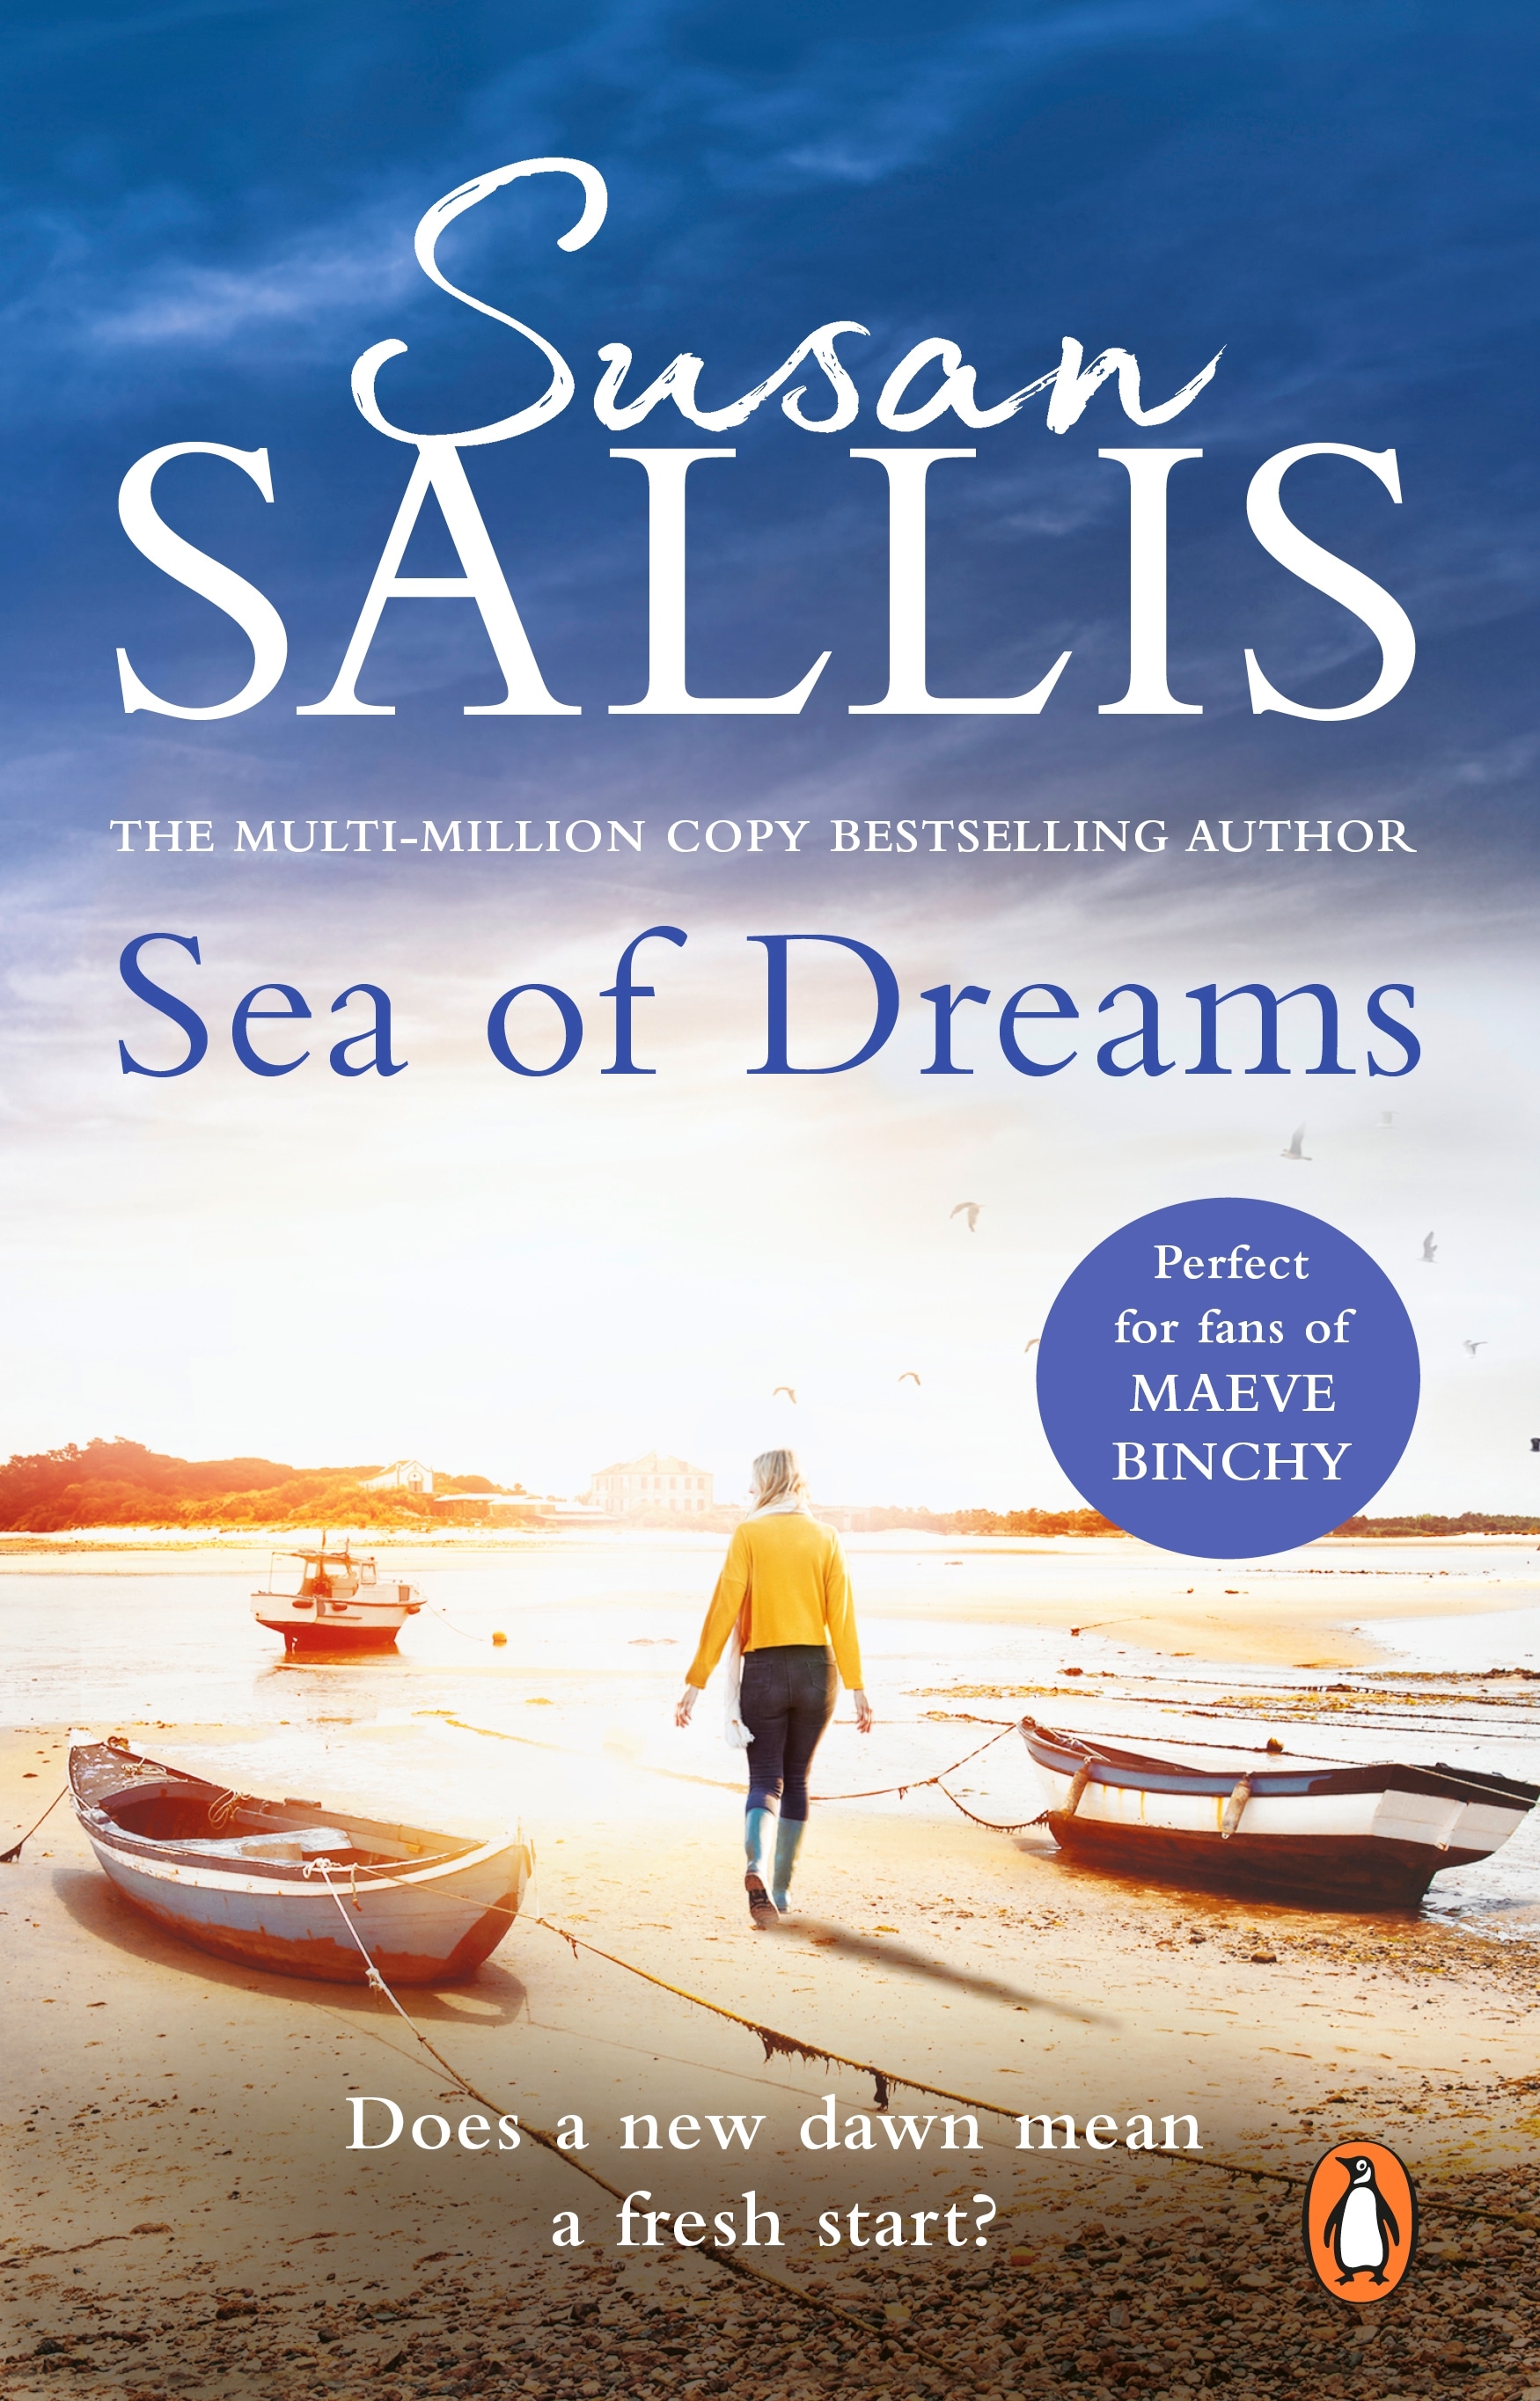 Book “Sea Of Dreams” by Susan Sallis — December 31, 2020